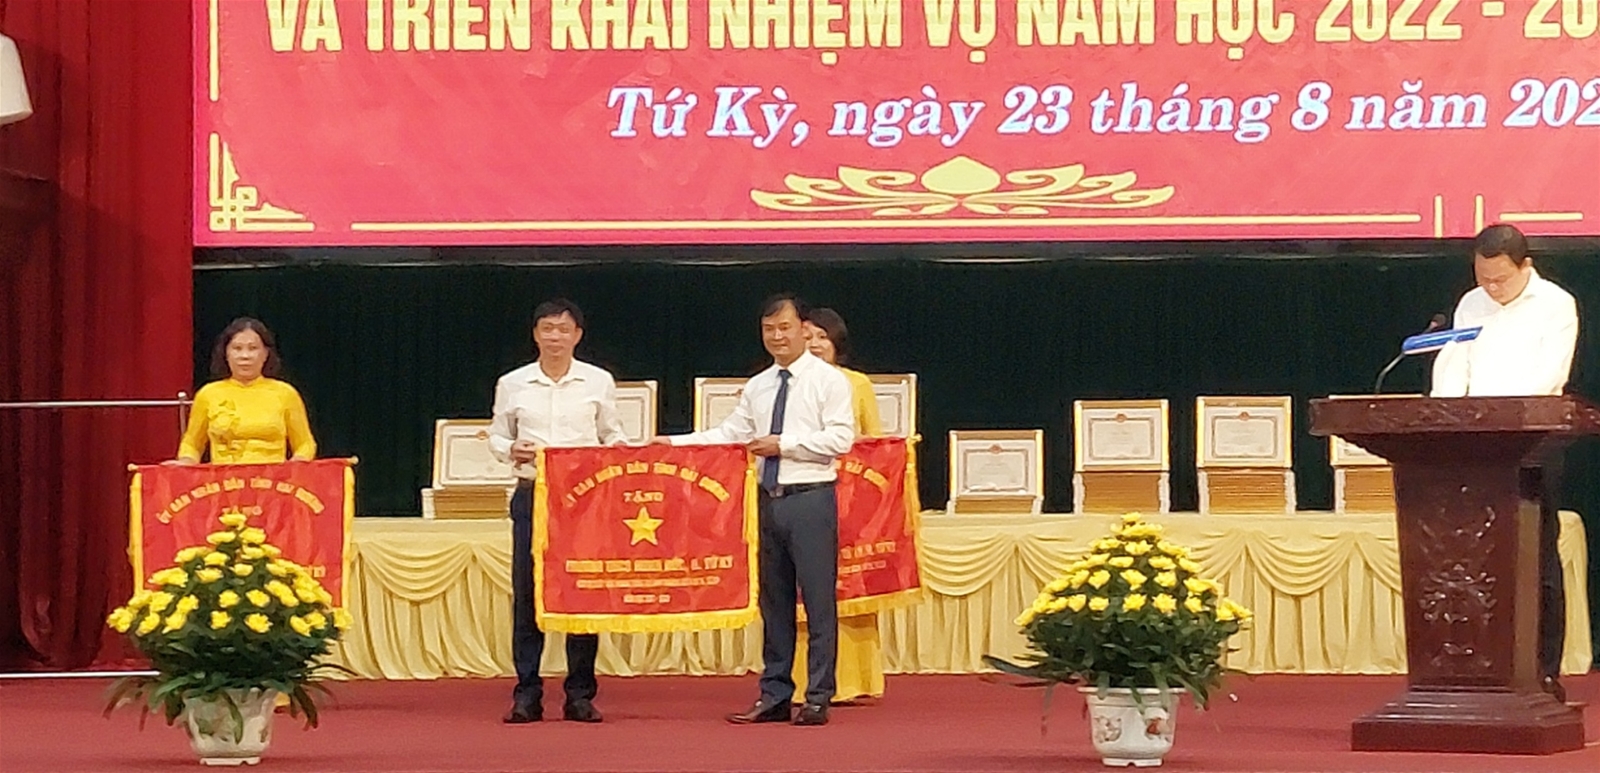 Trường THCS Minh Đức vinh dự được nhận cờ thi đua của UBND tỉnh Hải Dương